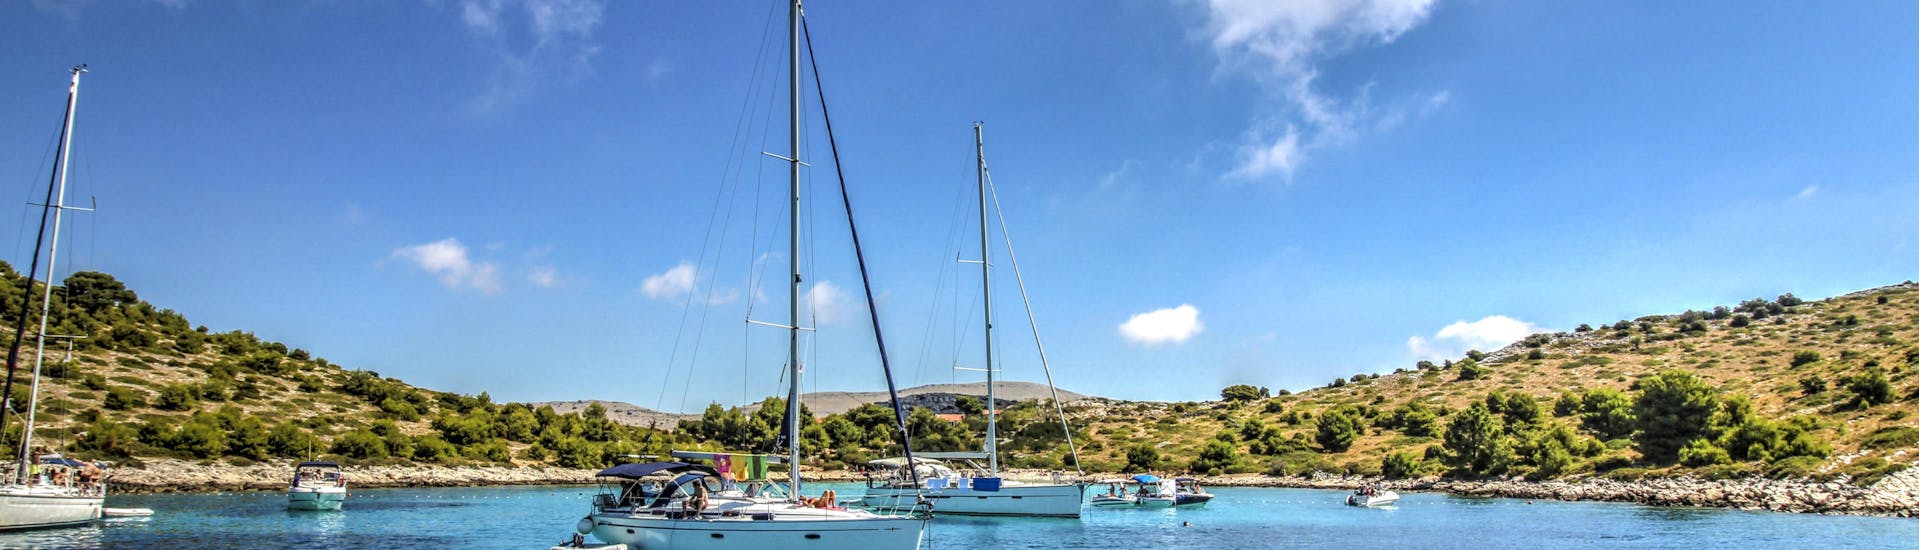 Meerdere boten langs de kust tijdens een boottocht naar Kornati Eilanden.